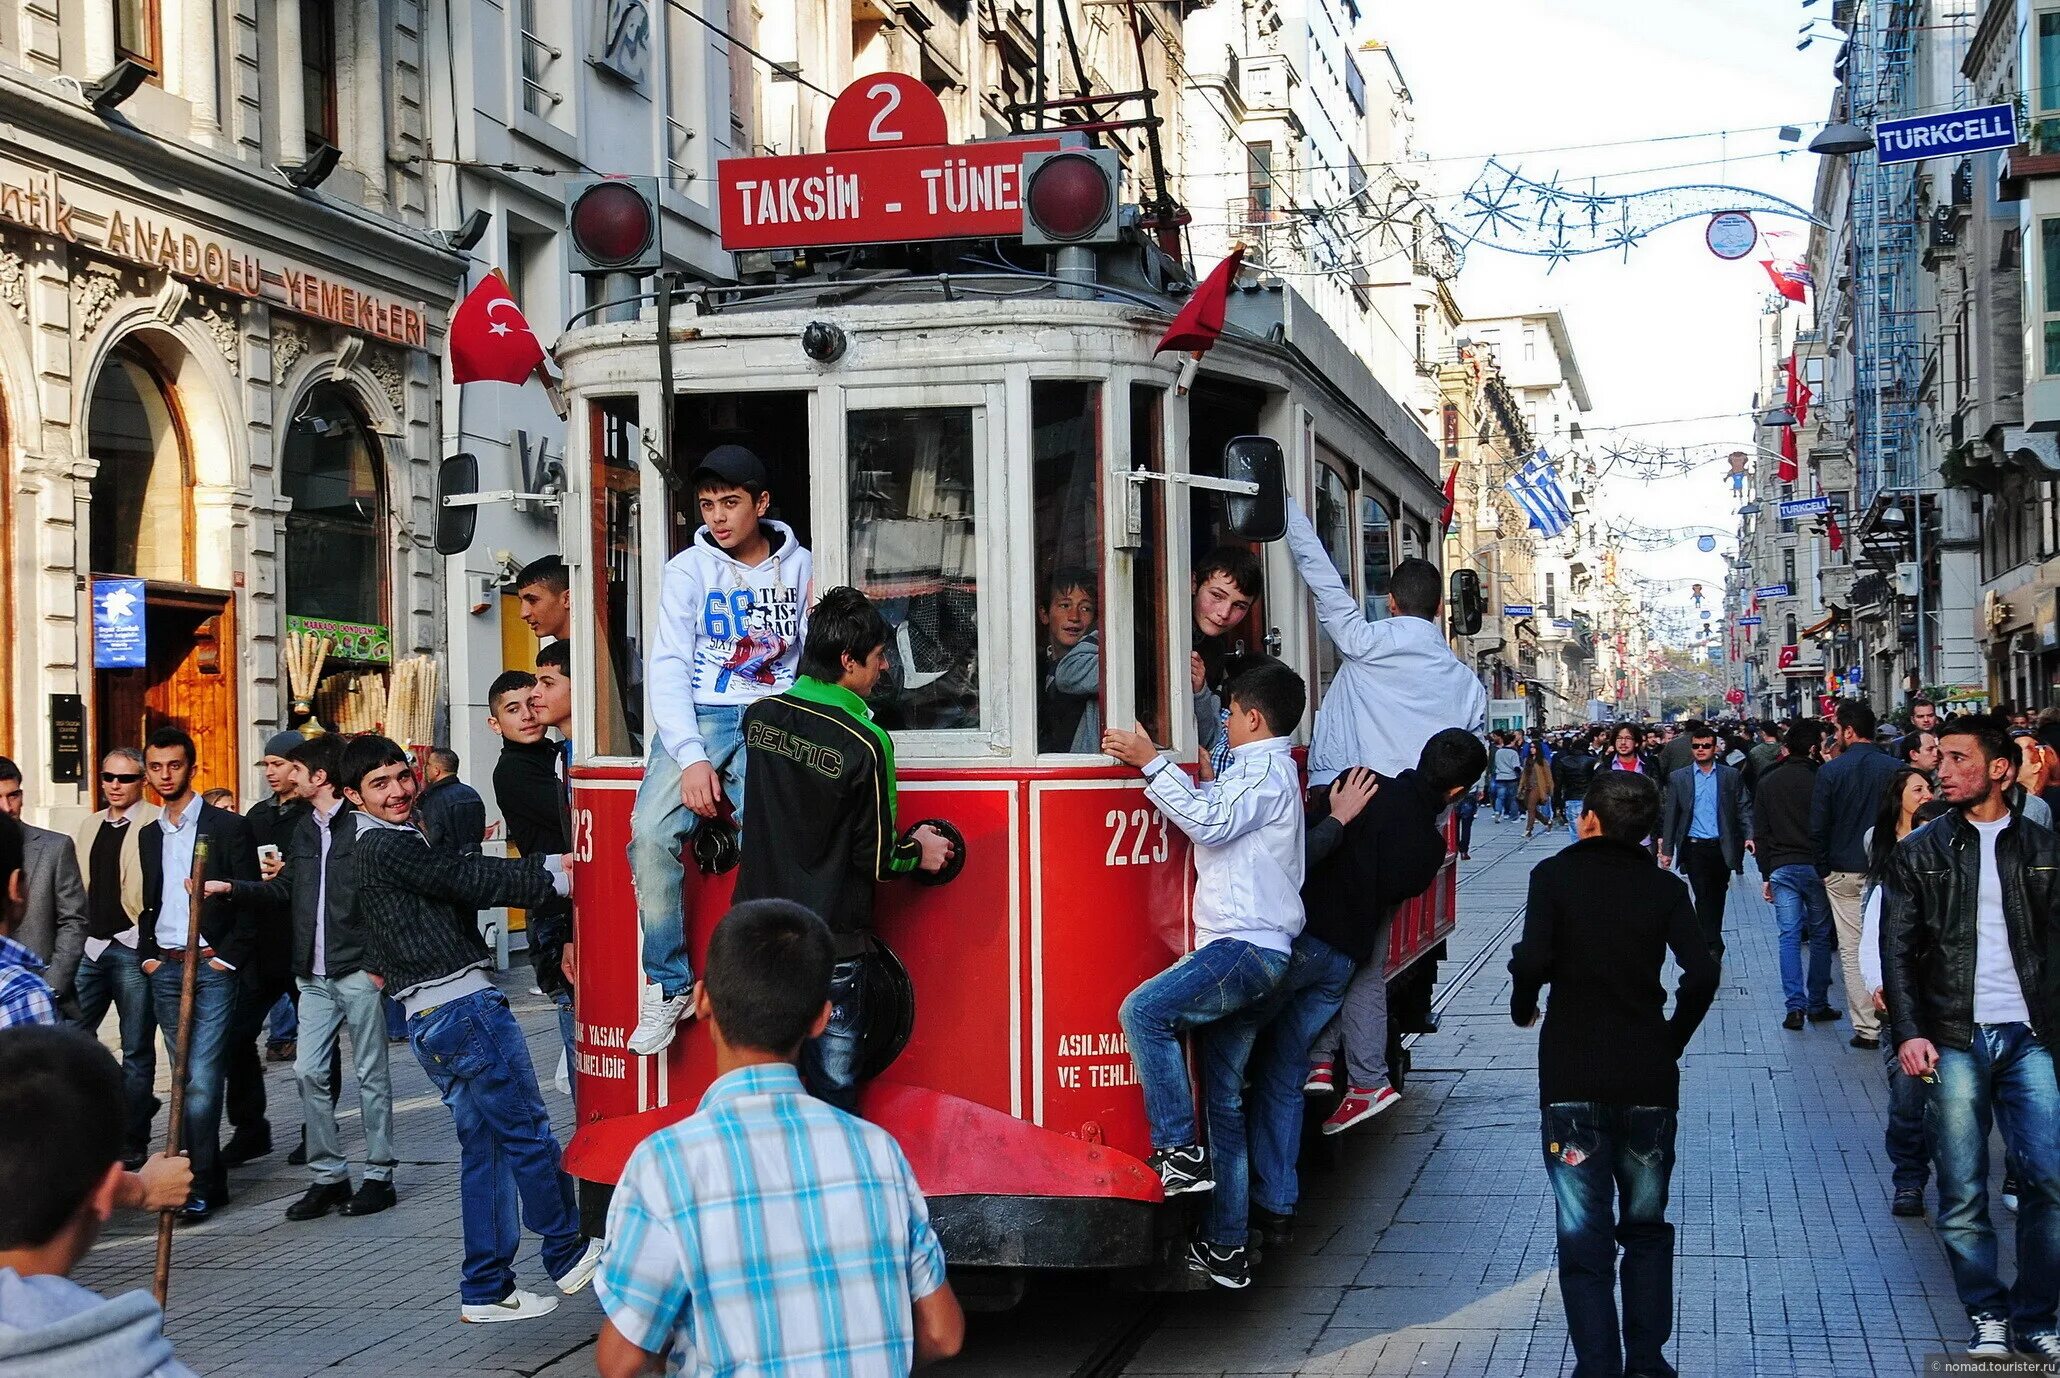 Стамбул за 4 дня